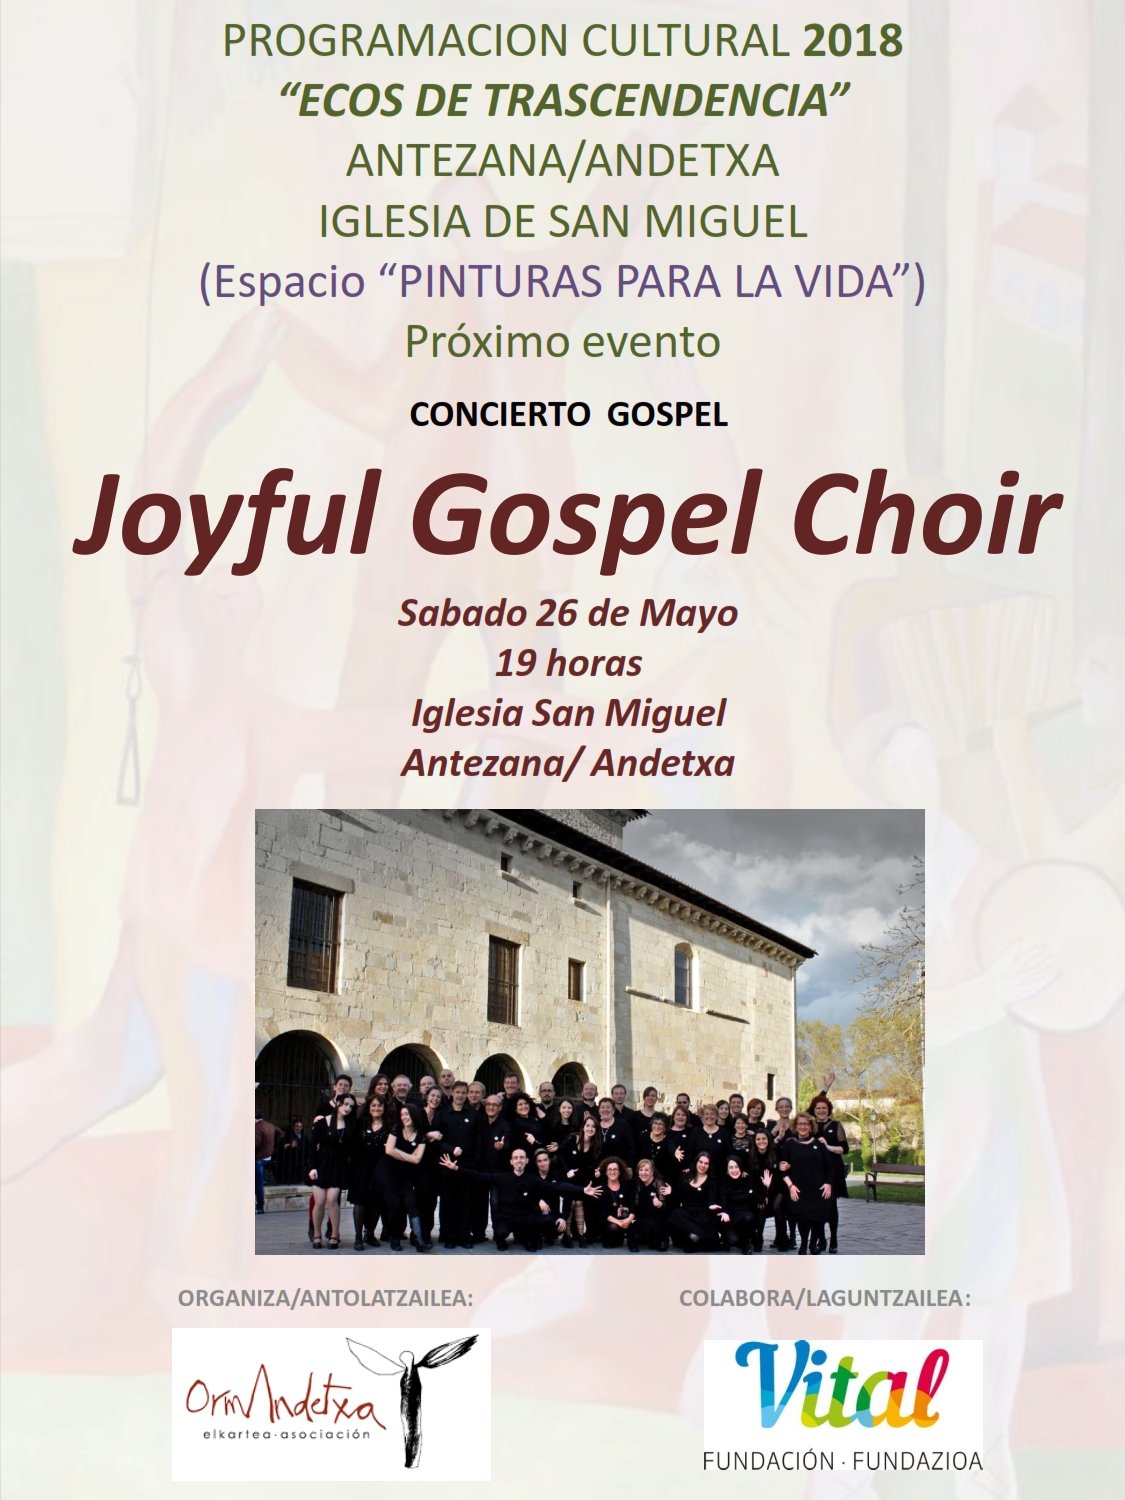 El Joyful Gospel Choir de la Federación de Coros de Alava dará un concierto este sábado 26 de mayo a las 19:00 en la iglesia de Antezana de Foronda dentro de la programación cultural 2018 “Ecos de trascendencia”